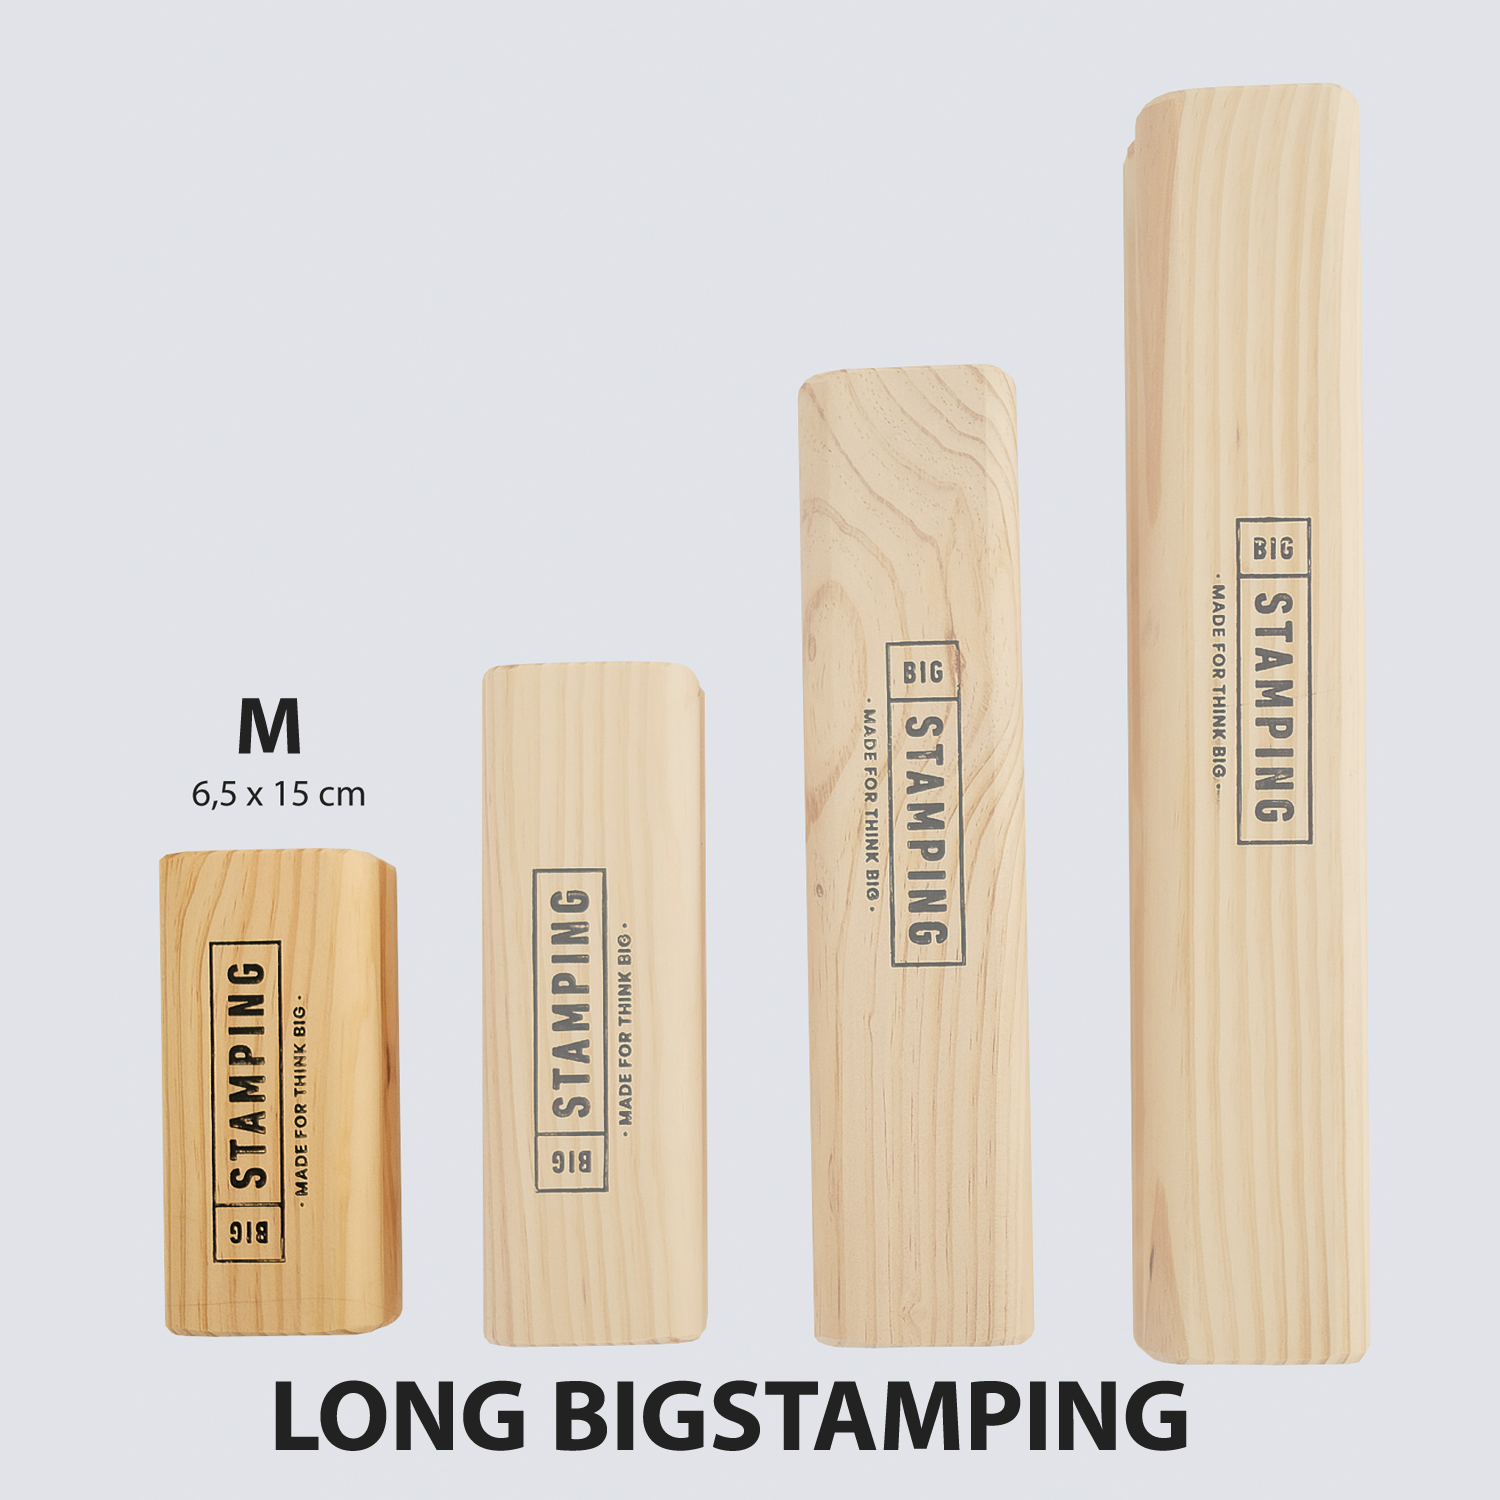 BASIC STAMPING KIT - BigStamping